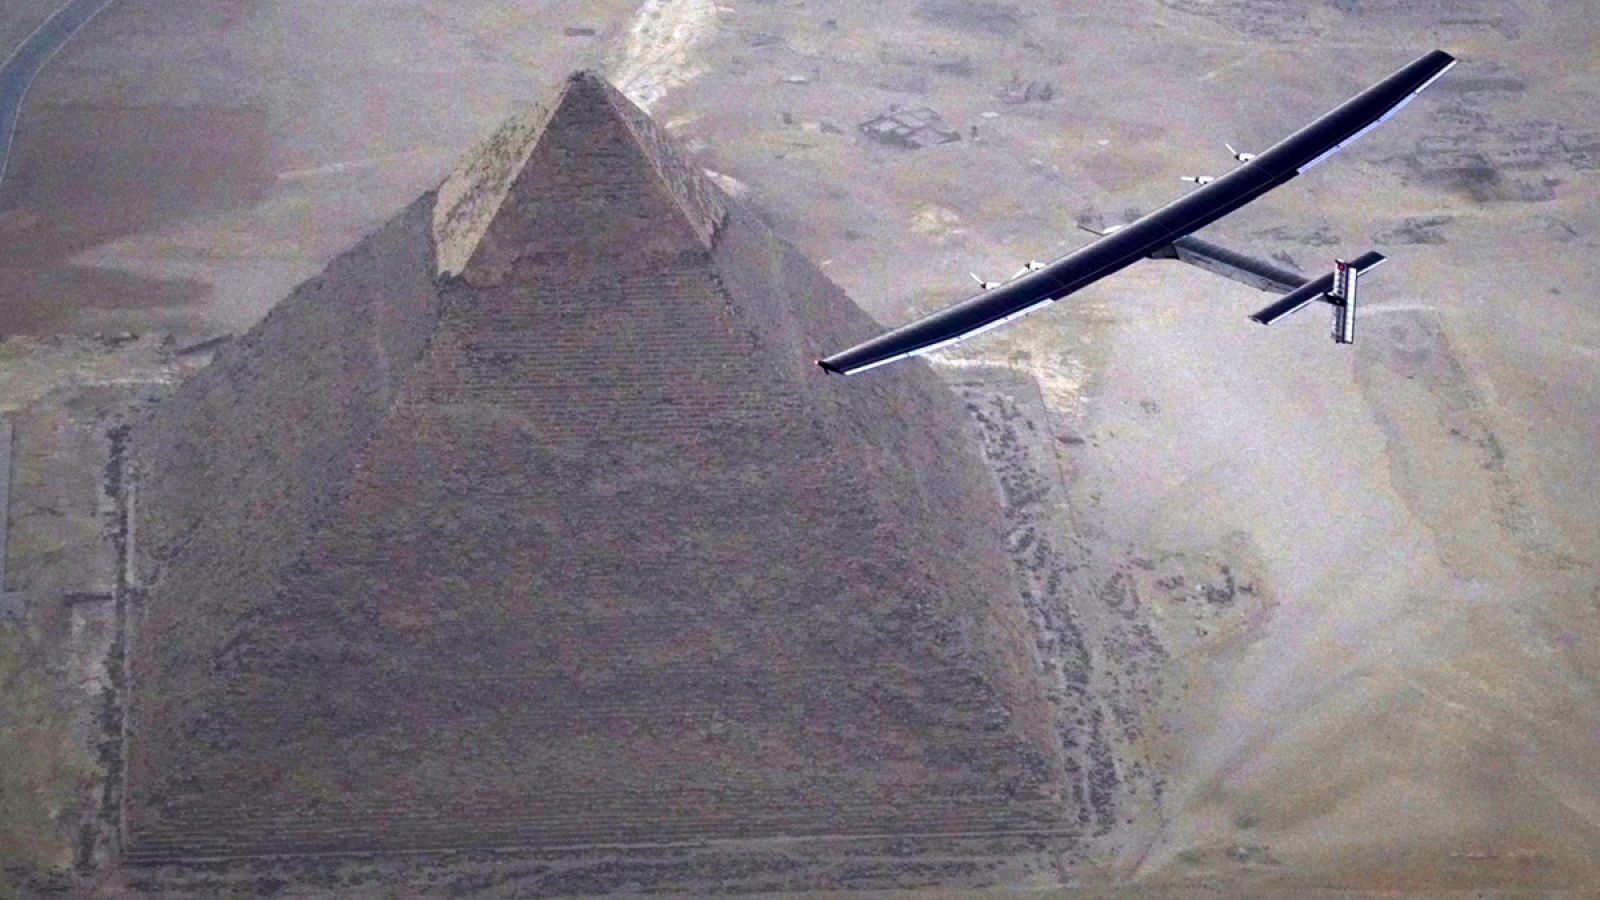 Antes de aterrizar en El Cairo, el prototipo sobrevoló las pirámides de Guiza.